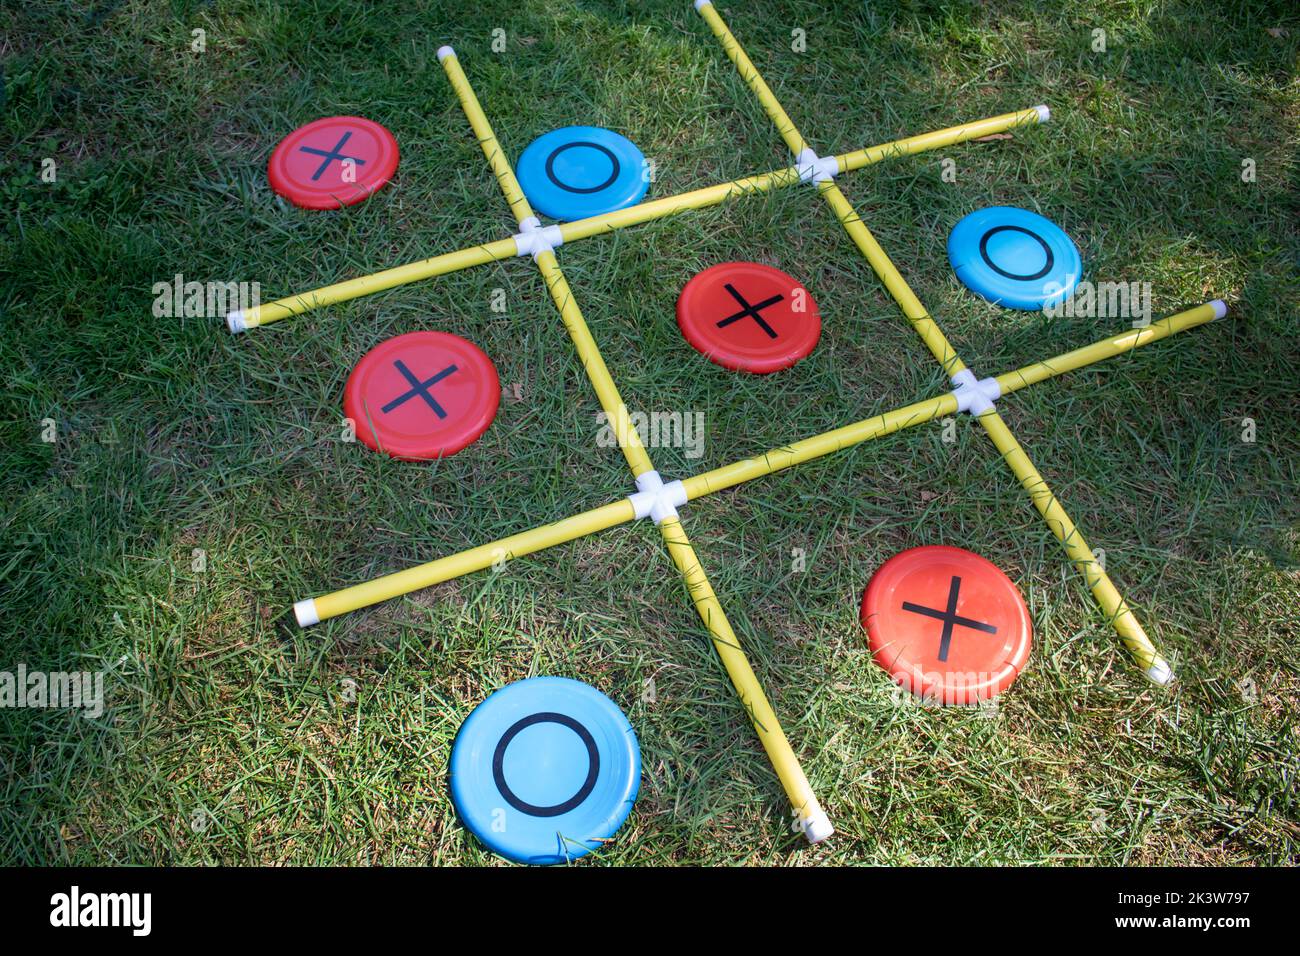 Las X y O físicas de un juego de césped de la diversión de los niños Foto de stock